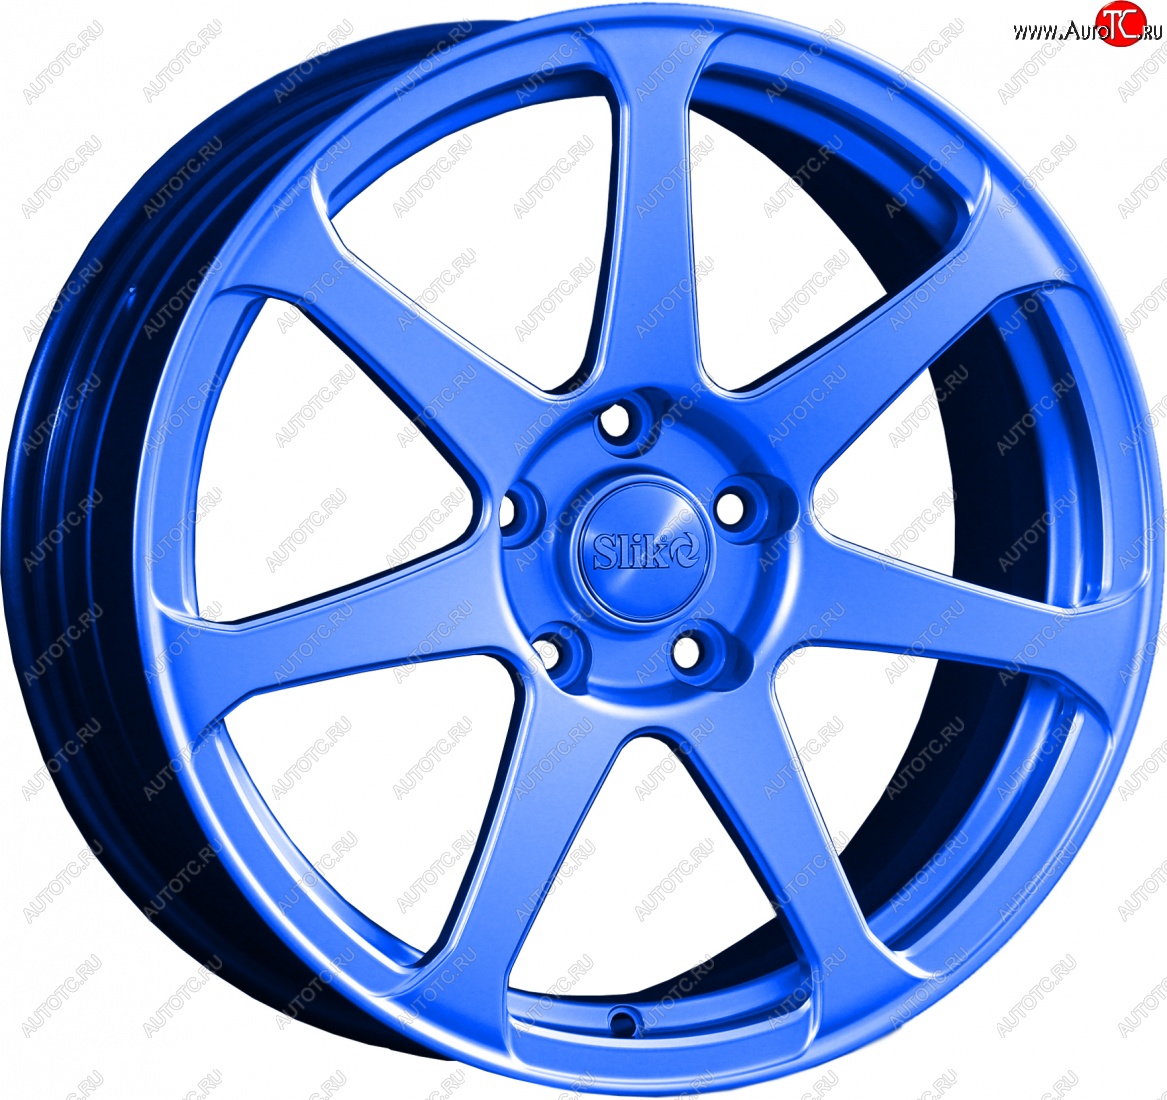 14 499 р. Кованый диск Slik classik R17x7.5 Синий (BLUE) 7.5x17 Chevrolet Lacetti хэтчбек (2002-2013) 4x114.3xDIA56.6xET44.0 (Цвет: BLUE)